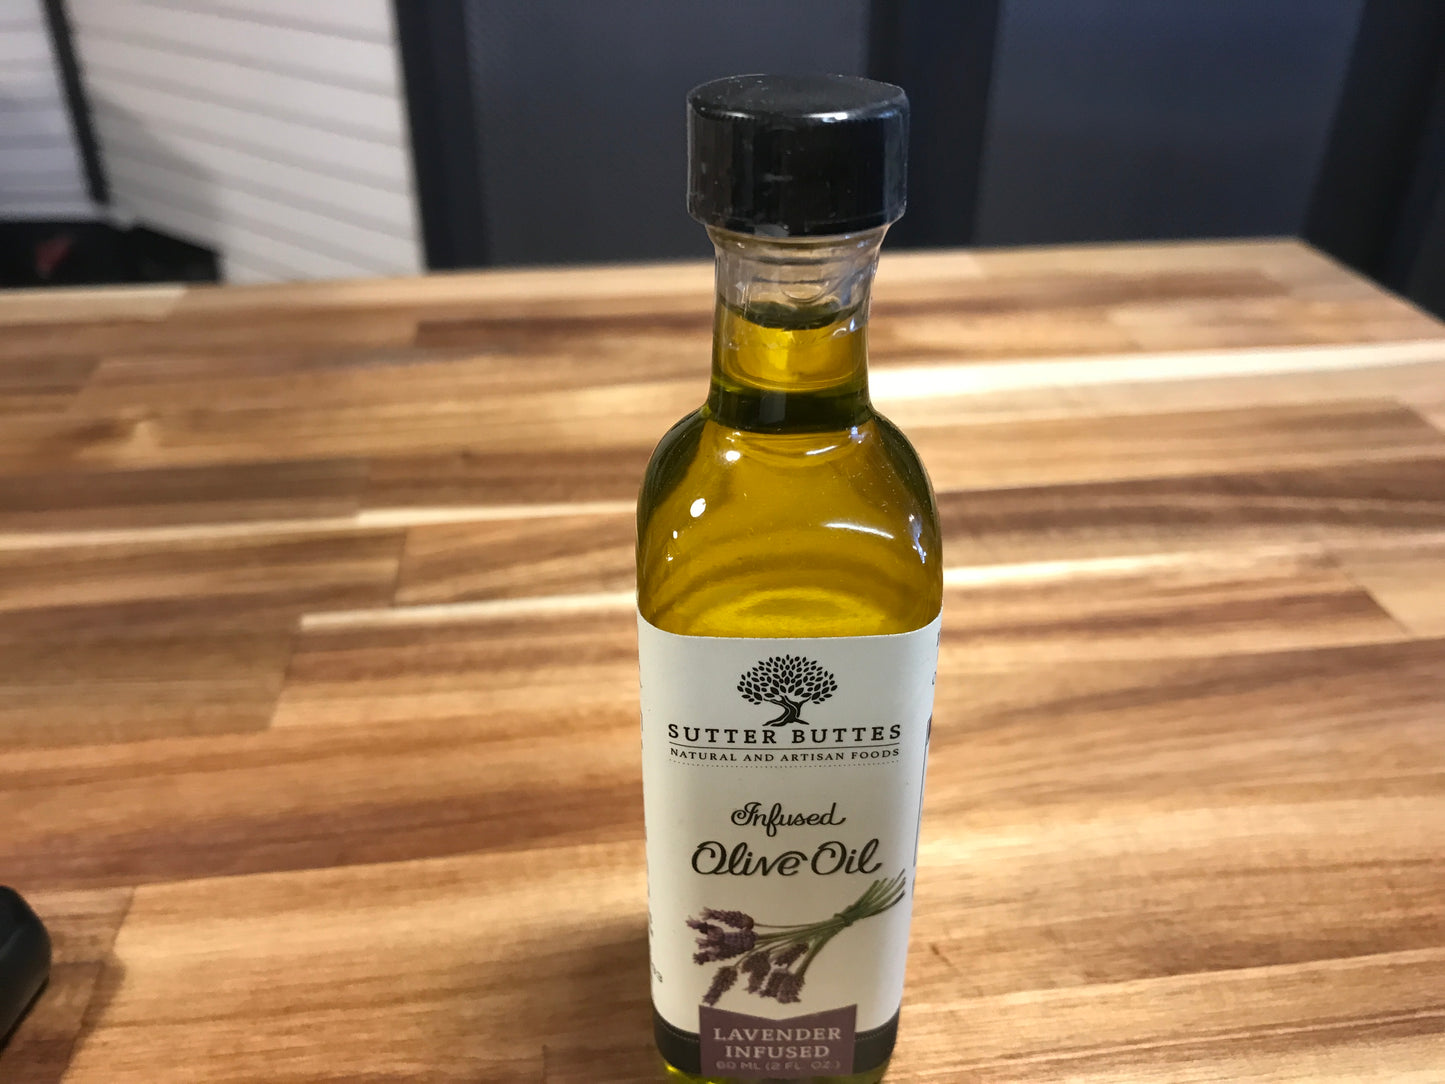 Sutter Buttes Olive Oil Lavender